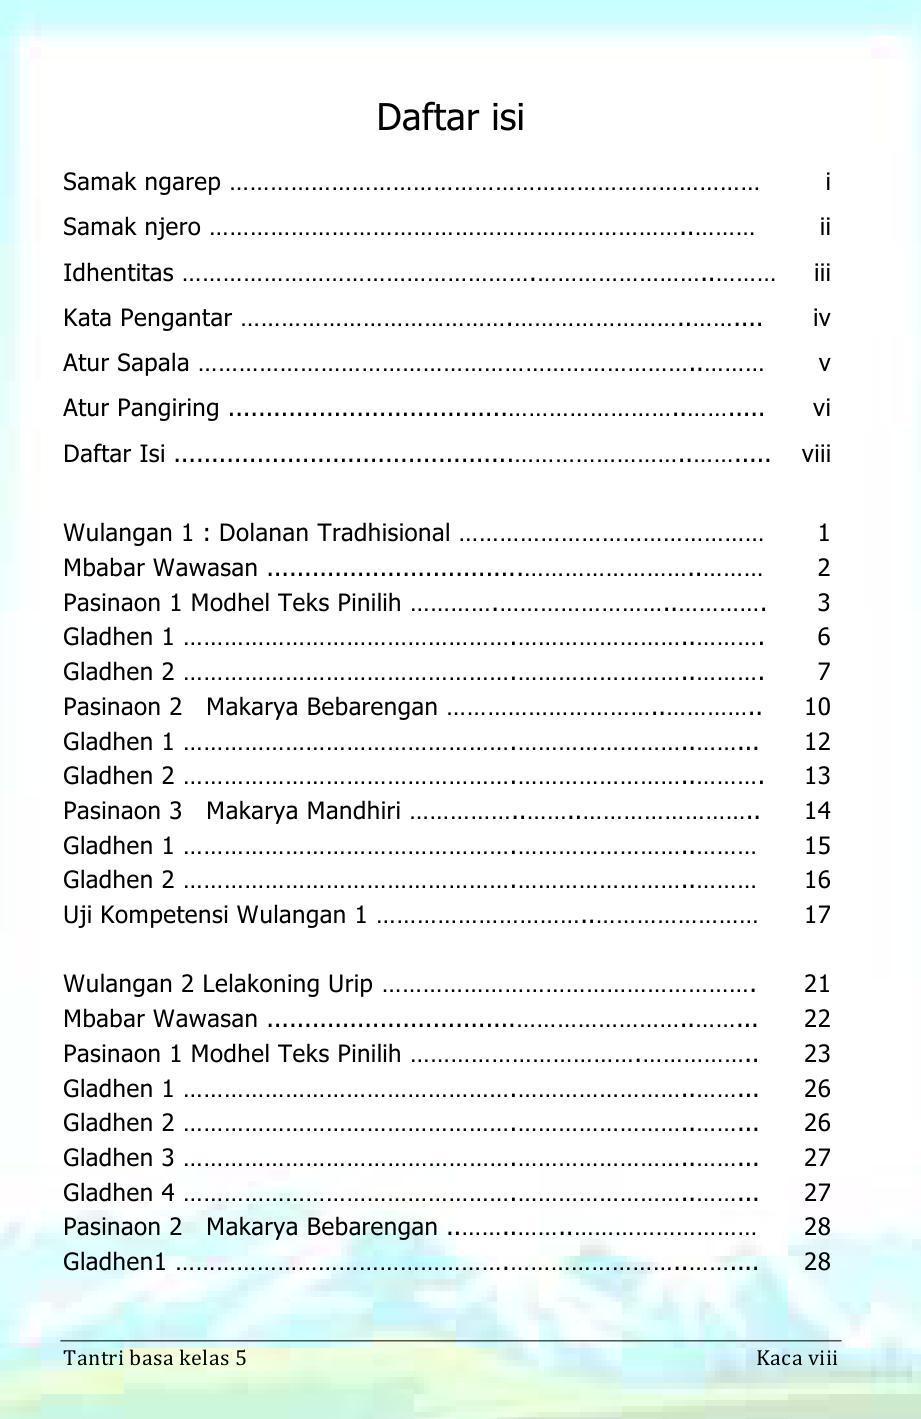 Buku Siswa Kelas 5 Bahasa Jawa Tantri Basa 2016 For Android Apk Download